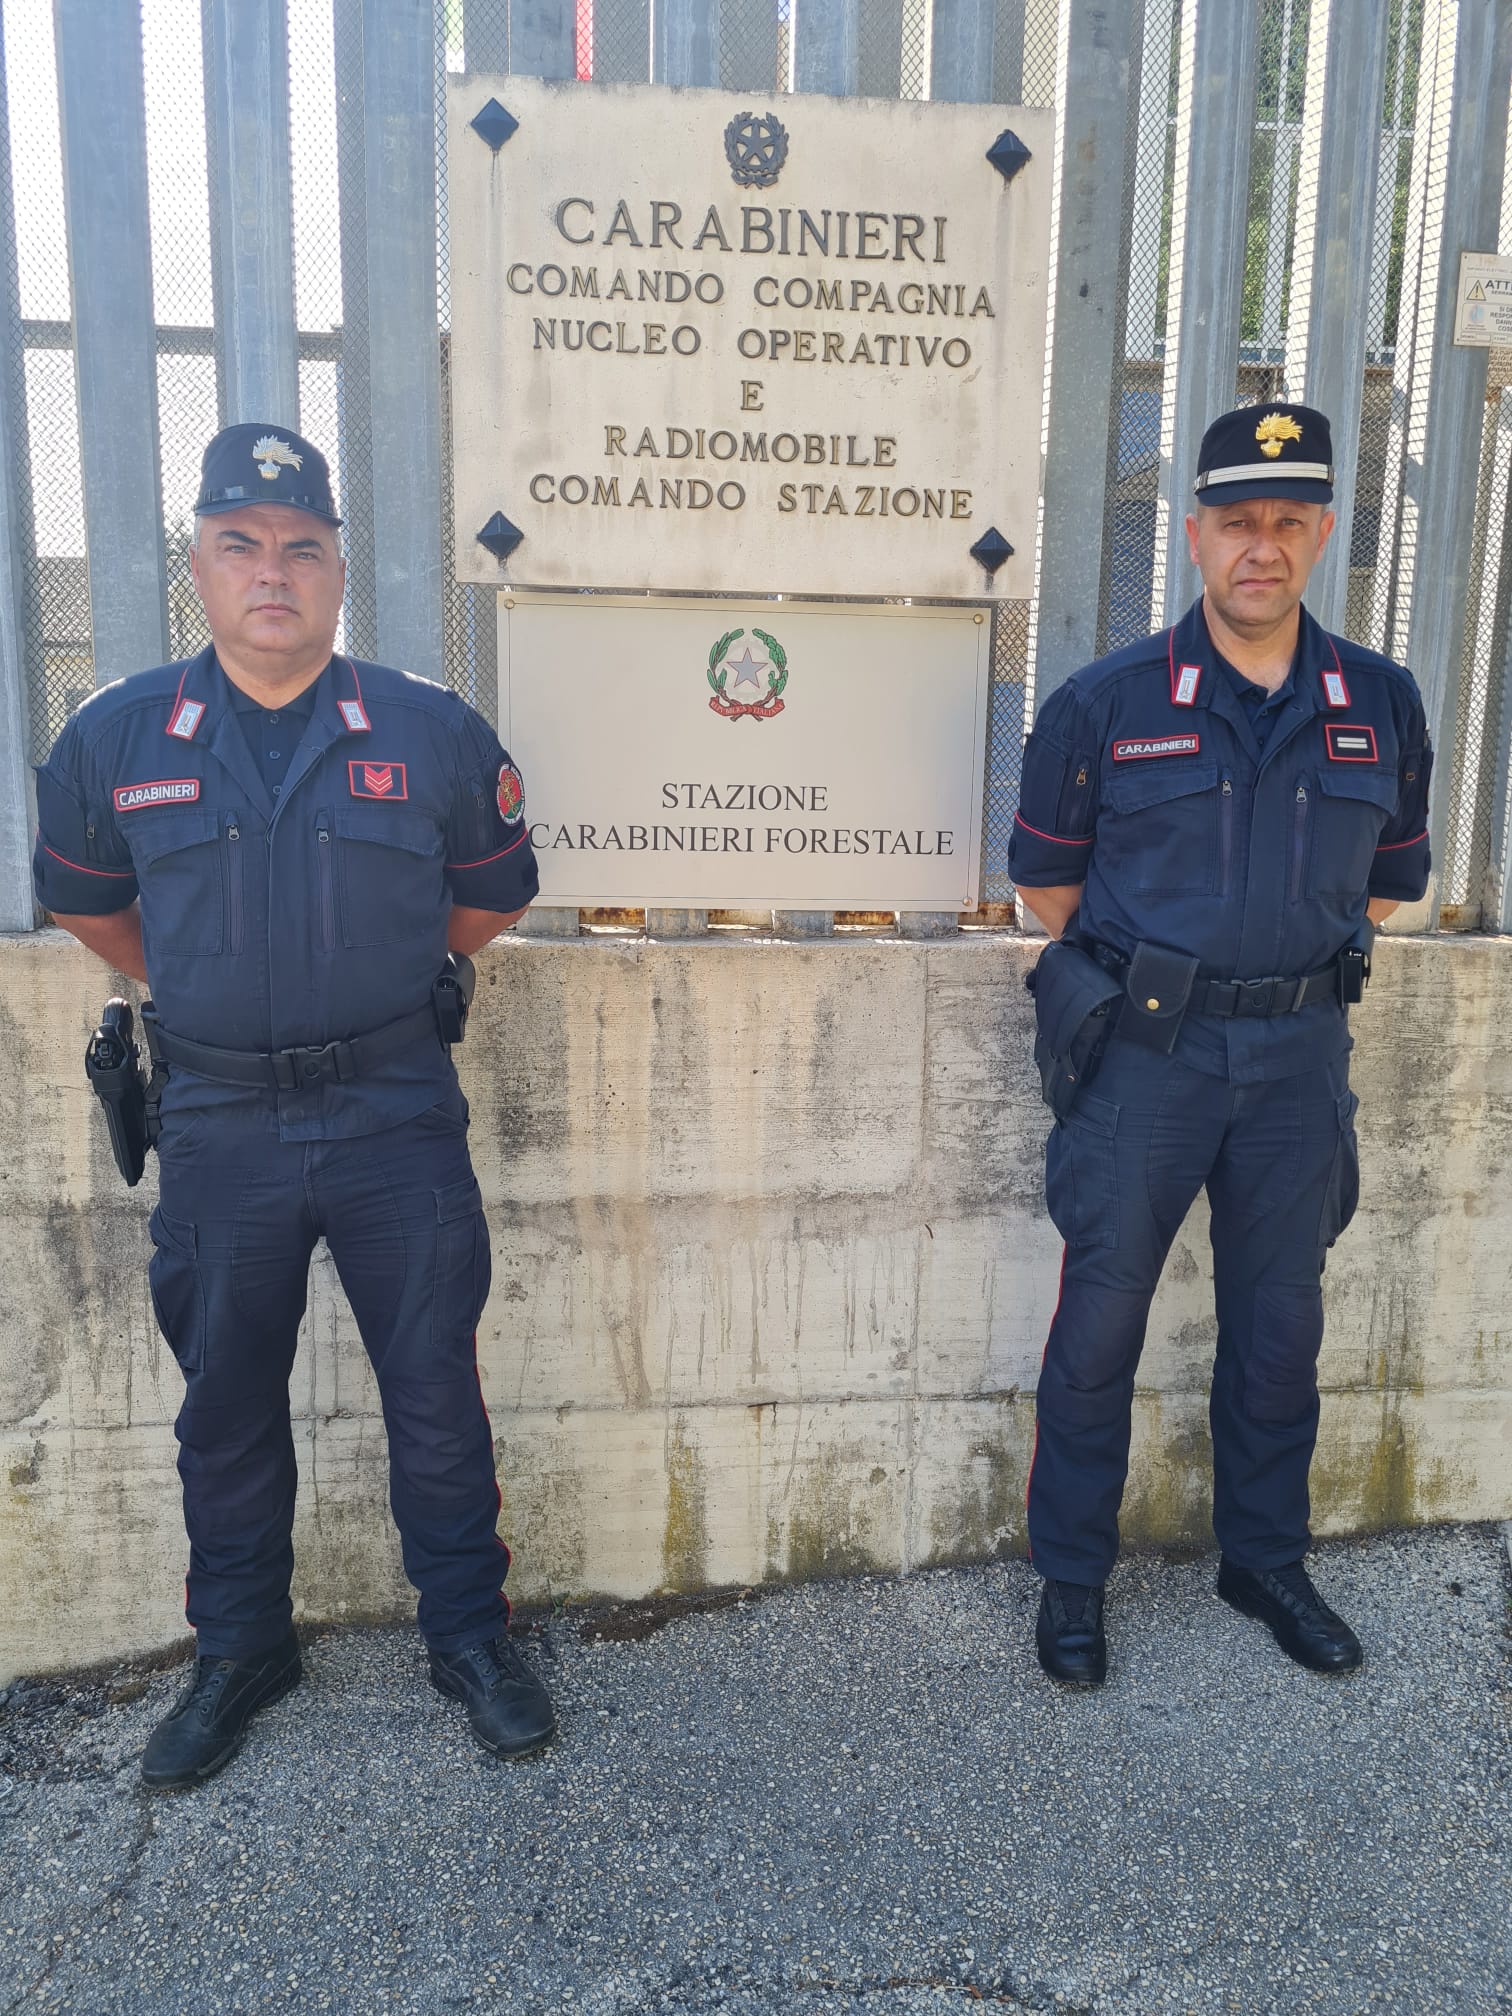 Nuova sede per la Stazione Carabinieri Forestale di Chieti